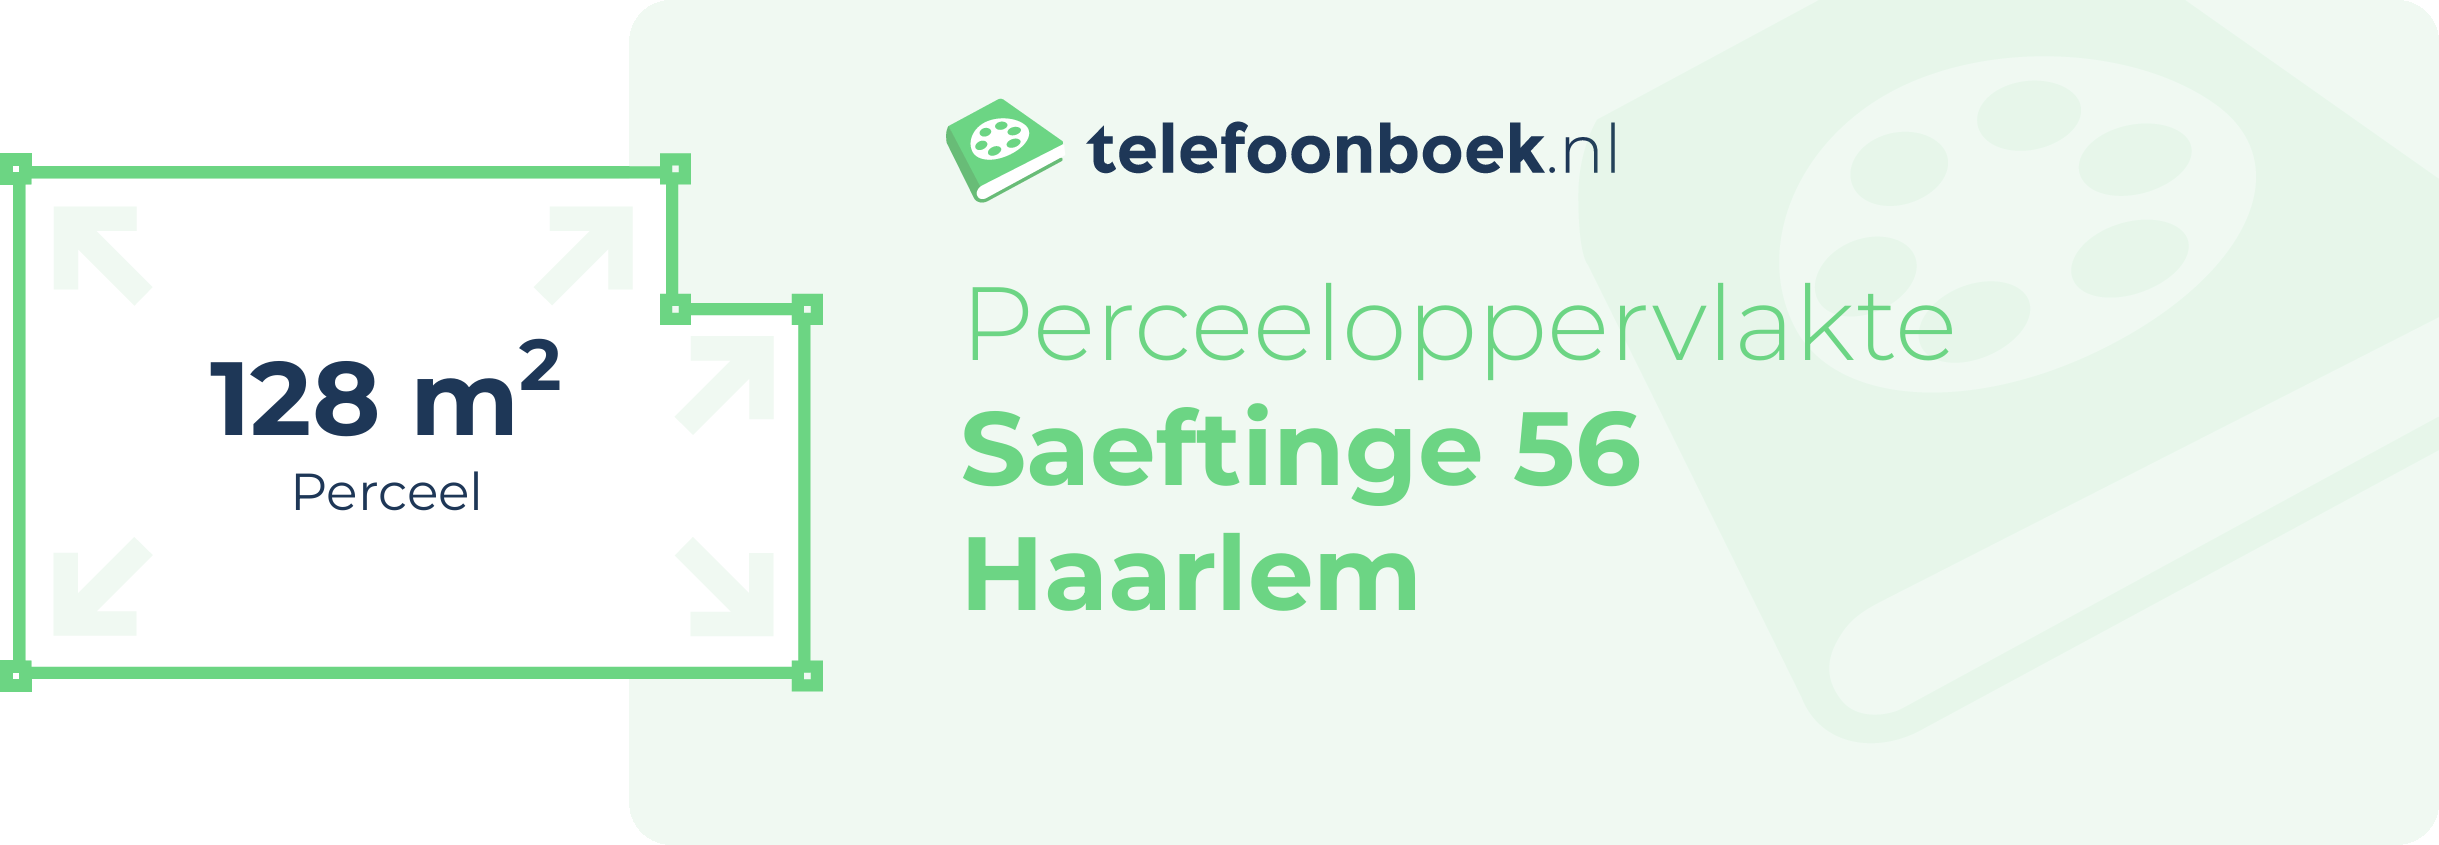 Perceeloppervlakte Saeftinge 56 Haarlem